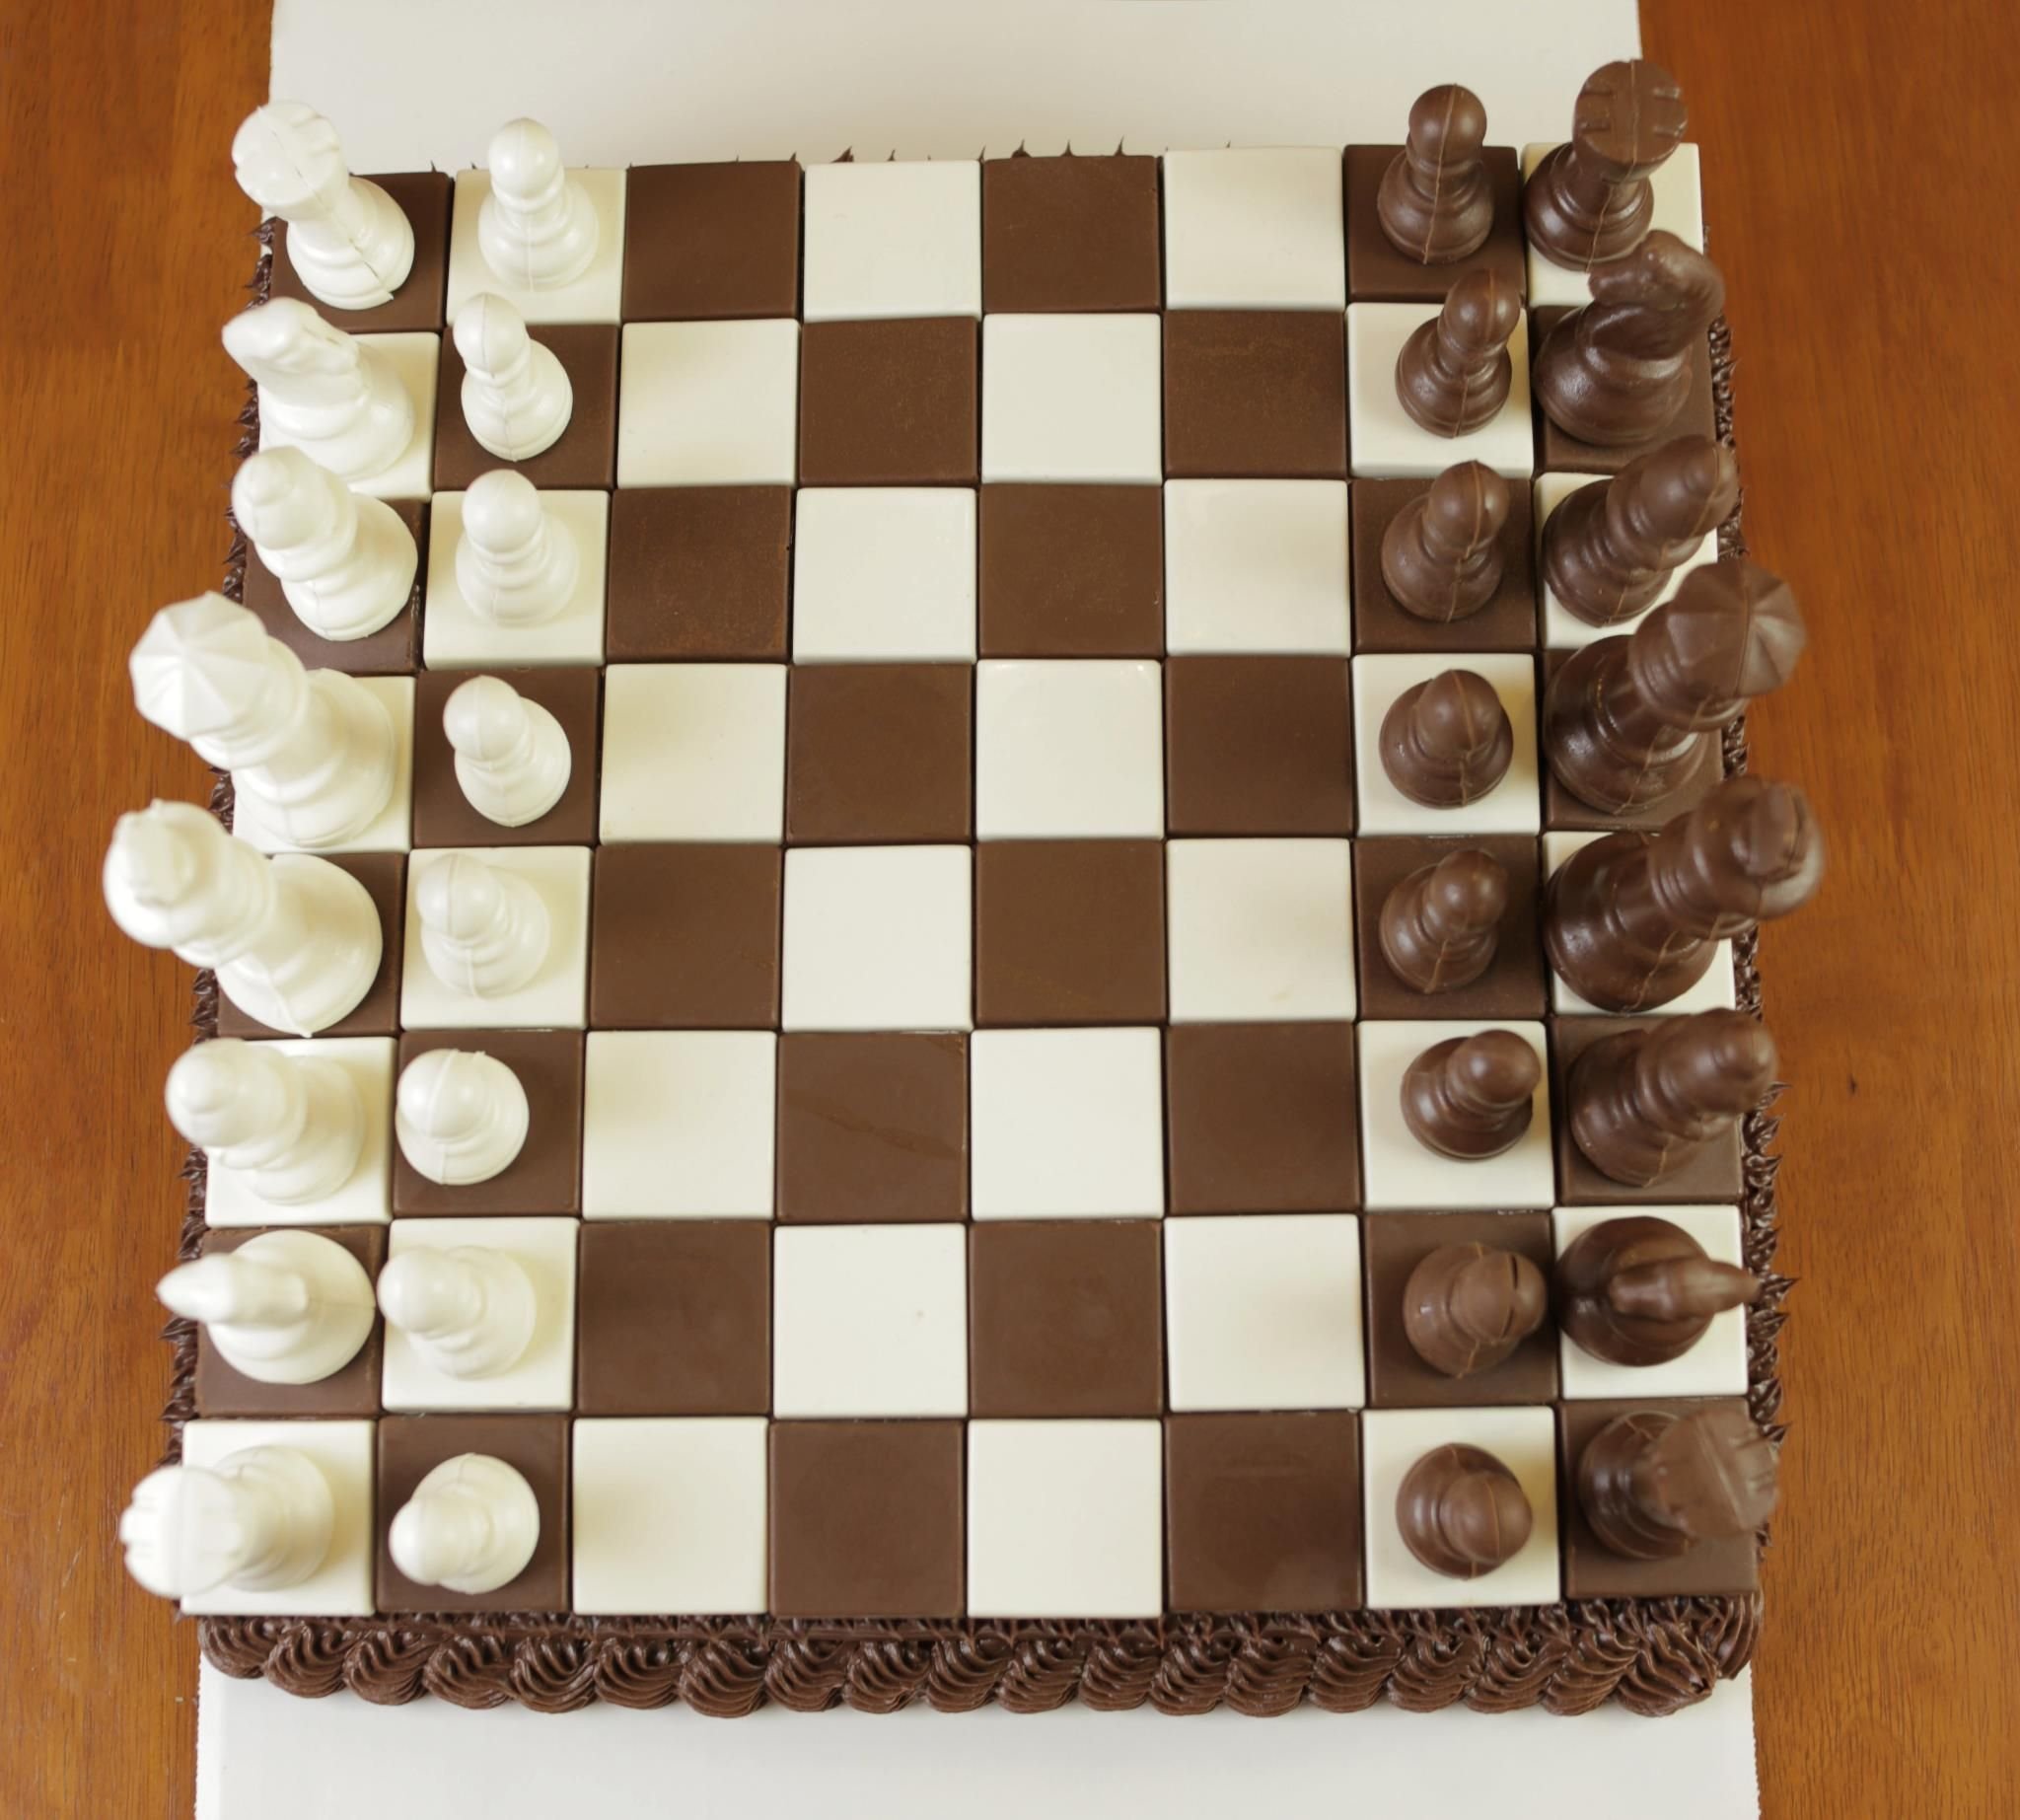 Лакомство для настоящих ценителей игры в шахматы: необычный торт в виде большой шахматной доски